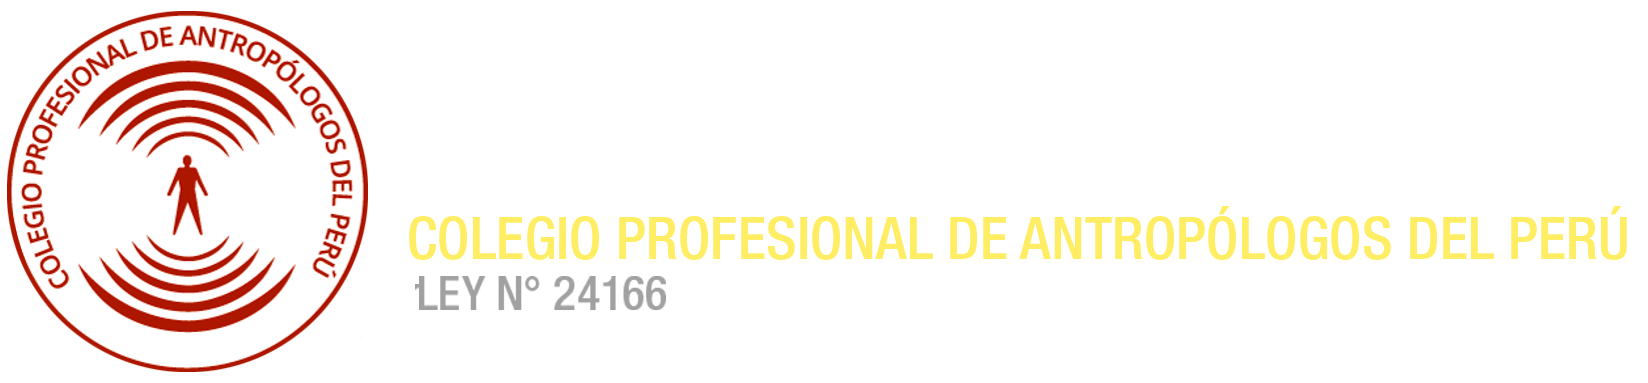 CONSEJO DIRECTIVO DESCENTRALIZADO REGIÓN AYACUCHO